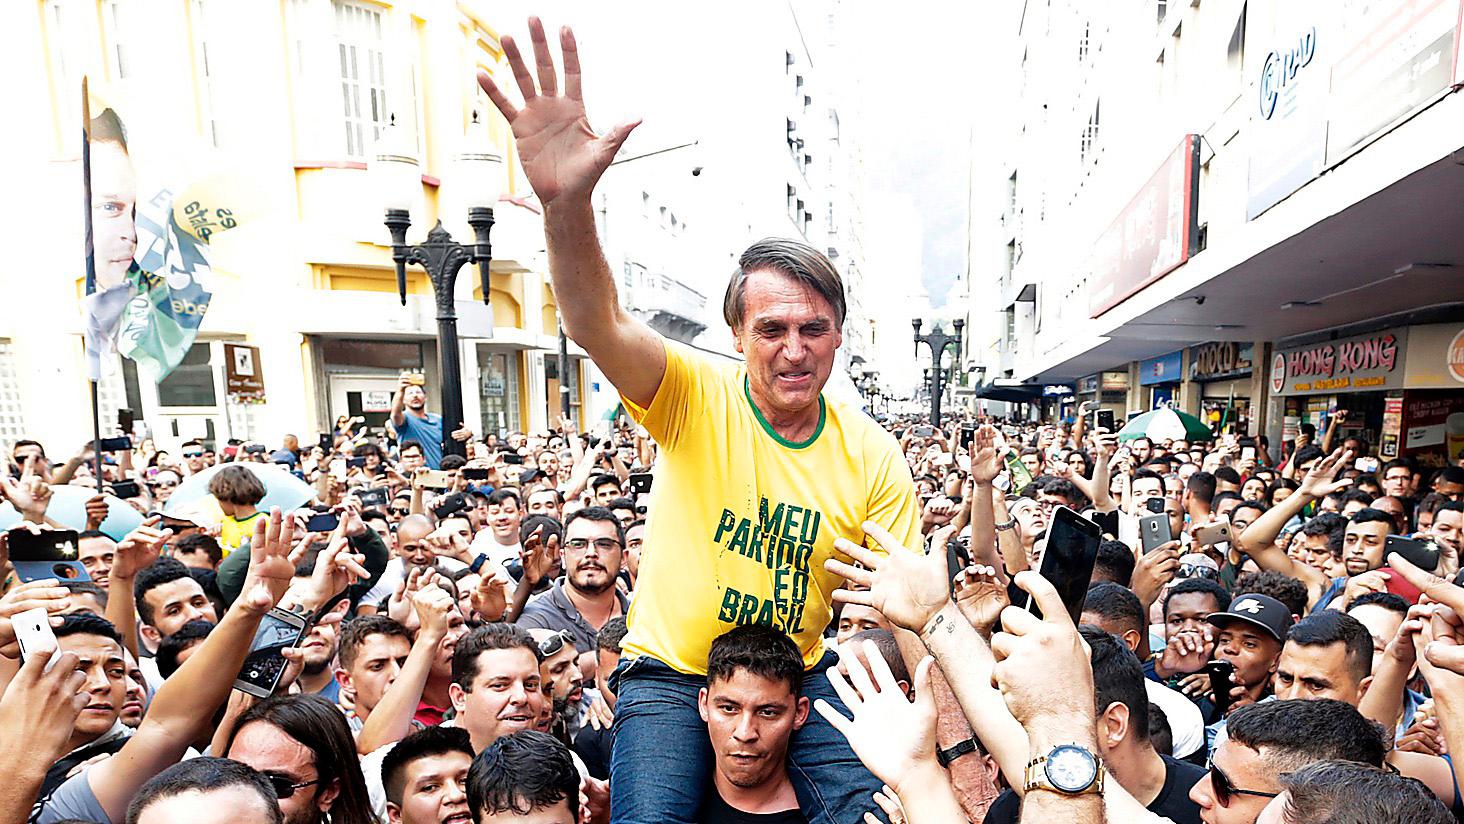 SEGERSÄKER Den högerextreme presidentkandidaten Jair Bolsonaro bärs fram av supportrar under presidentvalskampanjen. Strax efter att bilden togs knivhöggs han – en attack som stärkte hans position ytterligare.